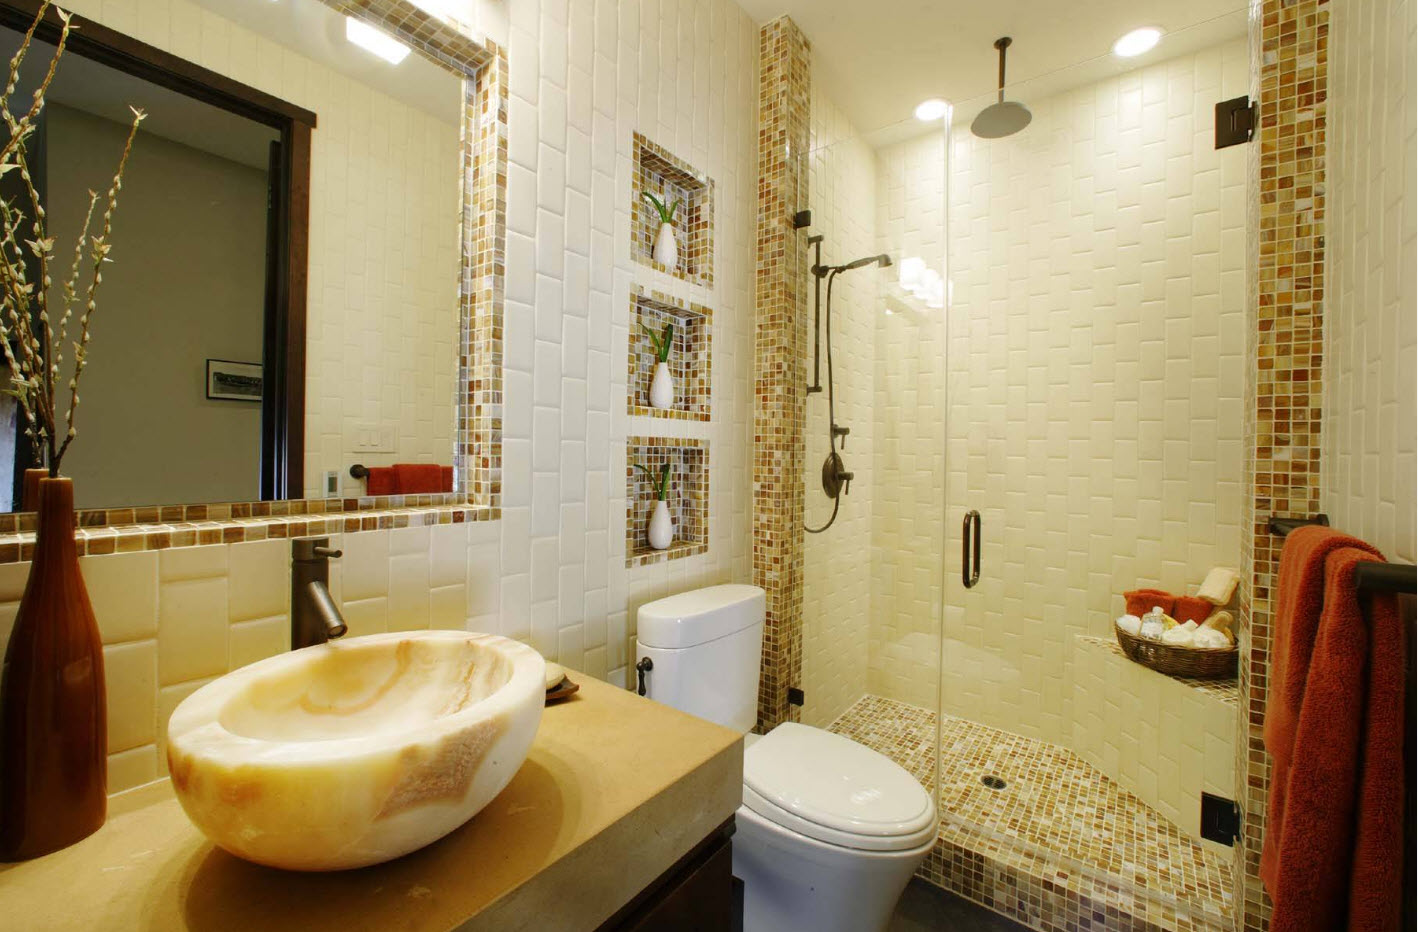 ремонт ванной комнаты своими руками интересные идеи из плитки